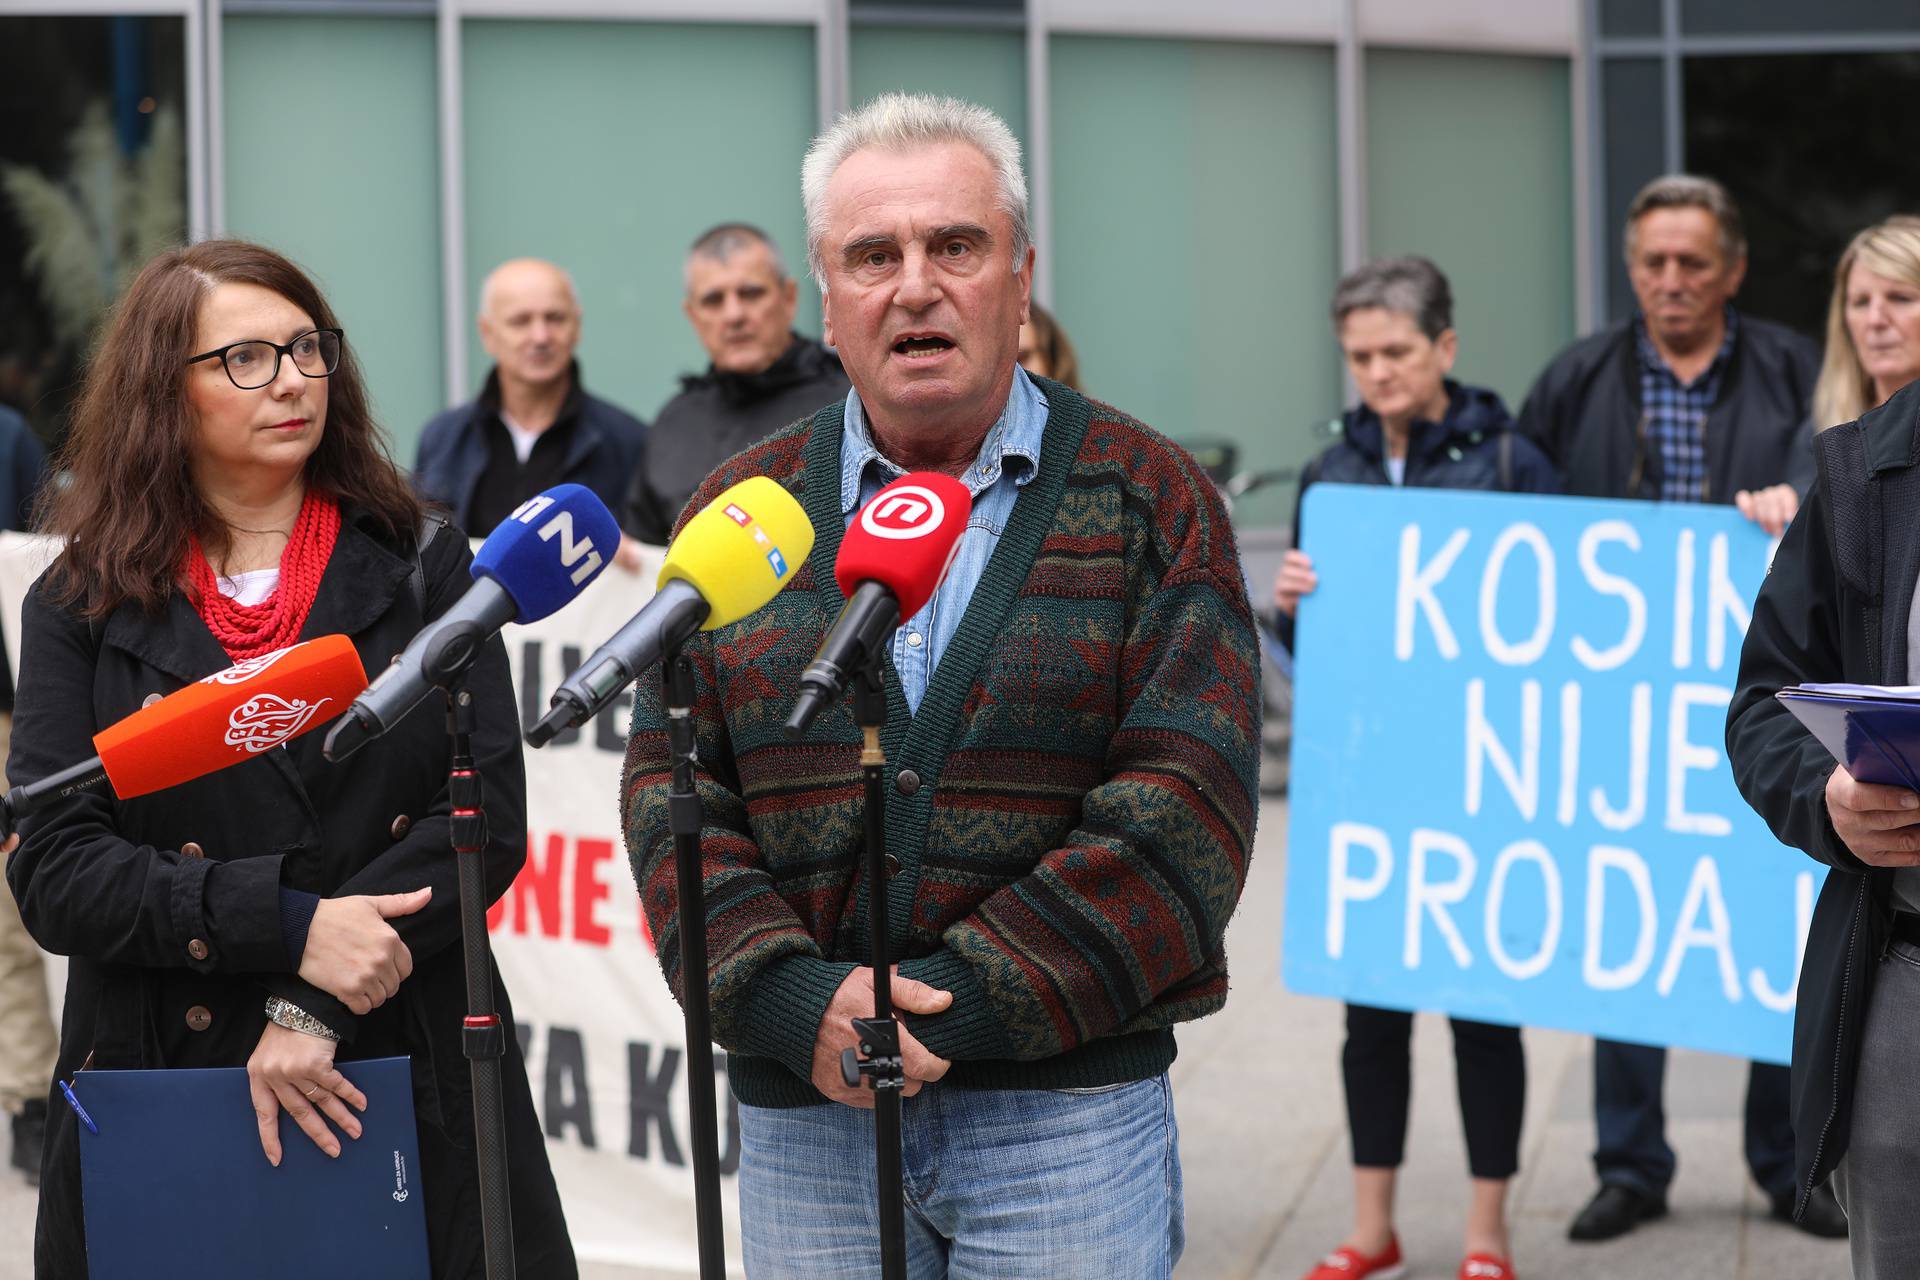 Zagreb: Prosvjedna akcija Kosinjana protiv hidroelektrane Kosinj